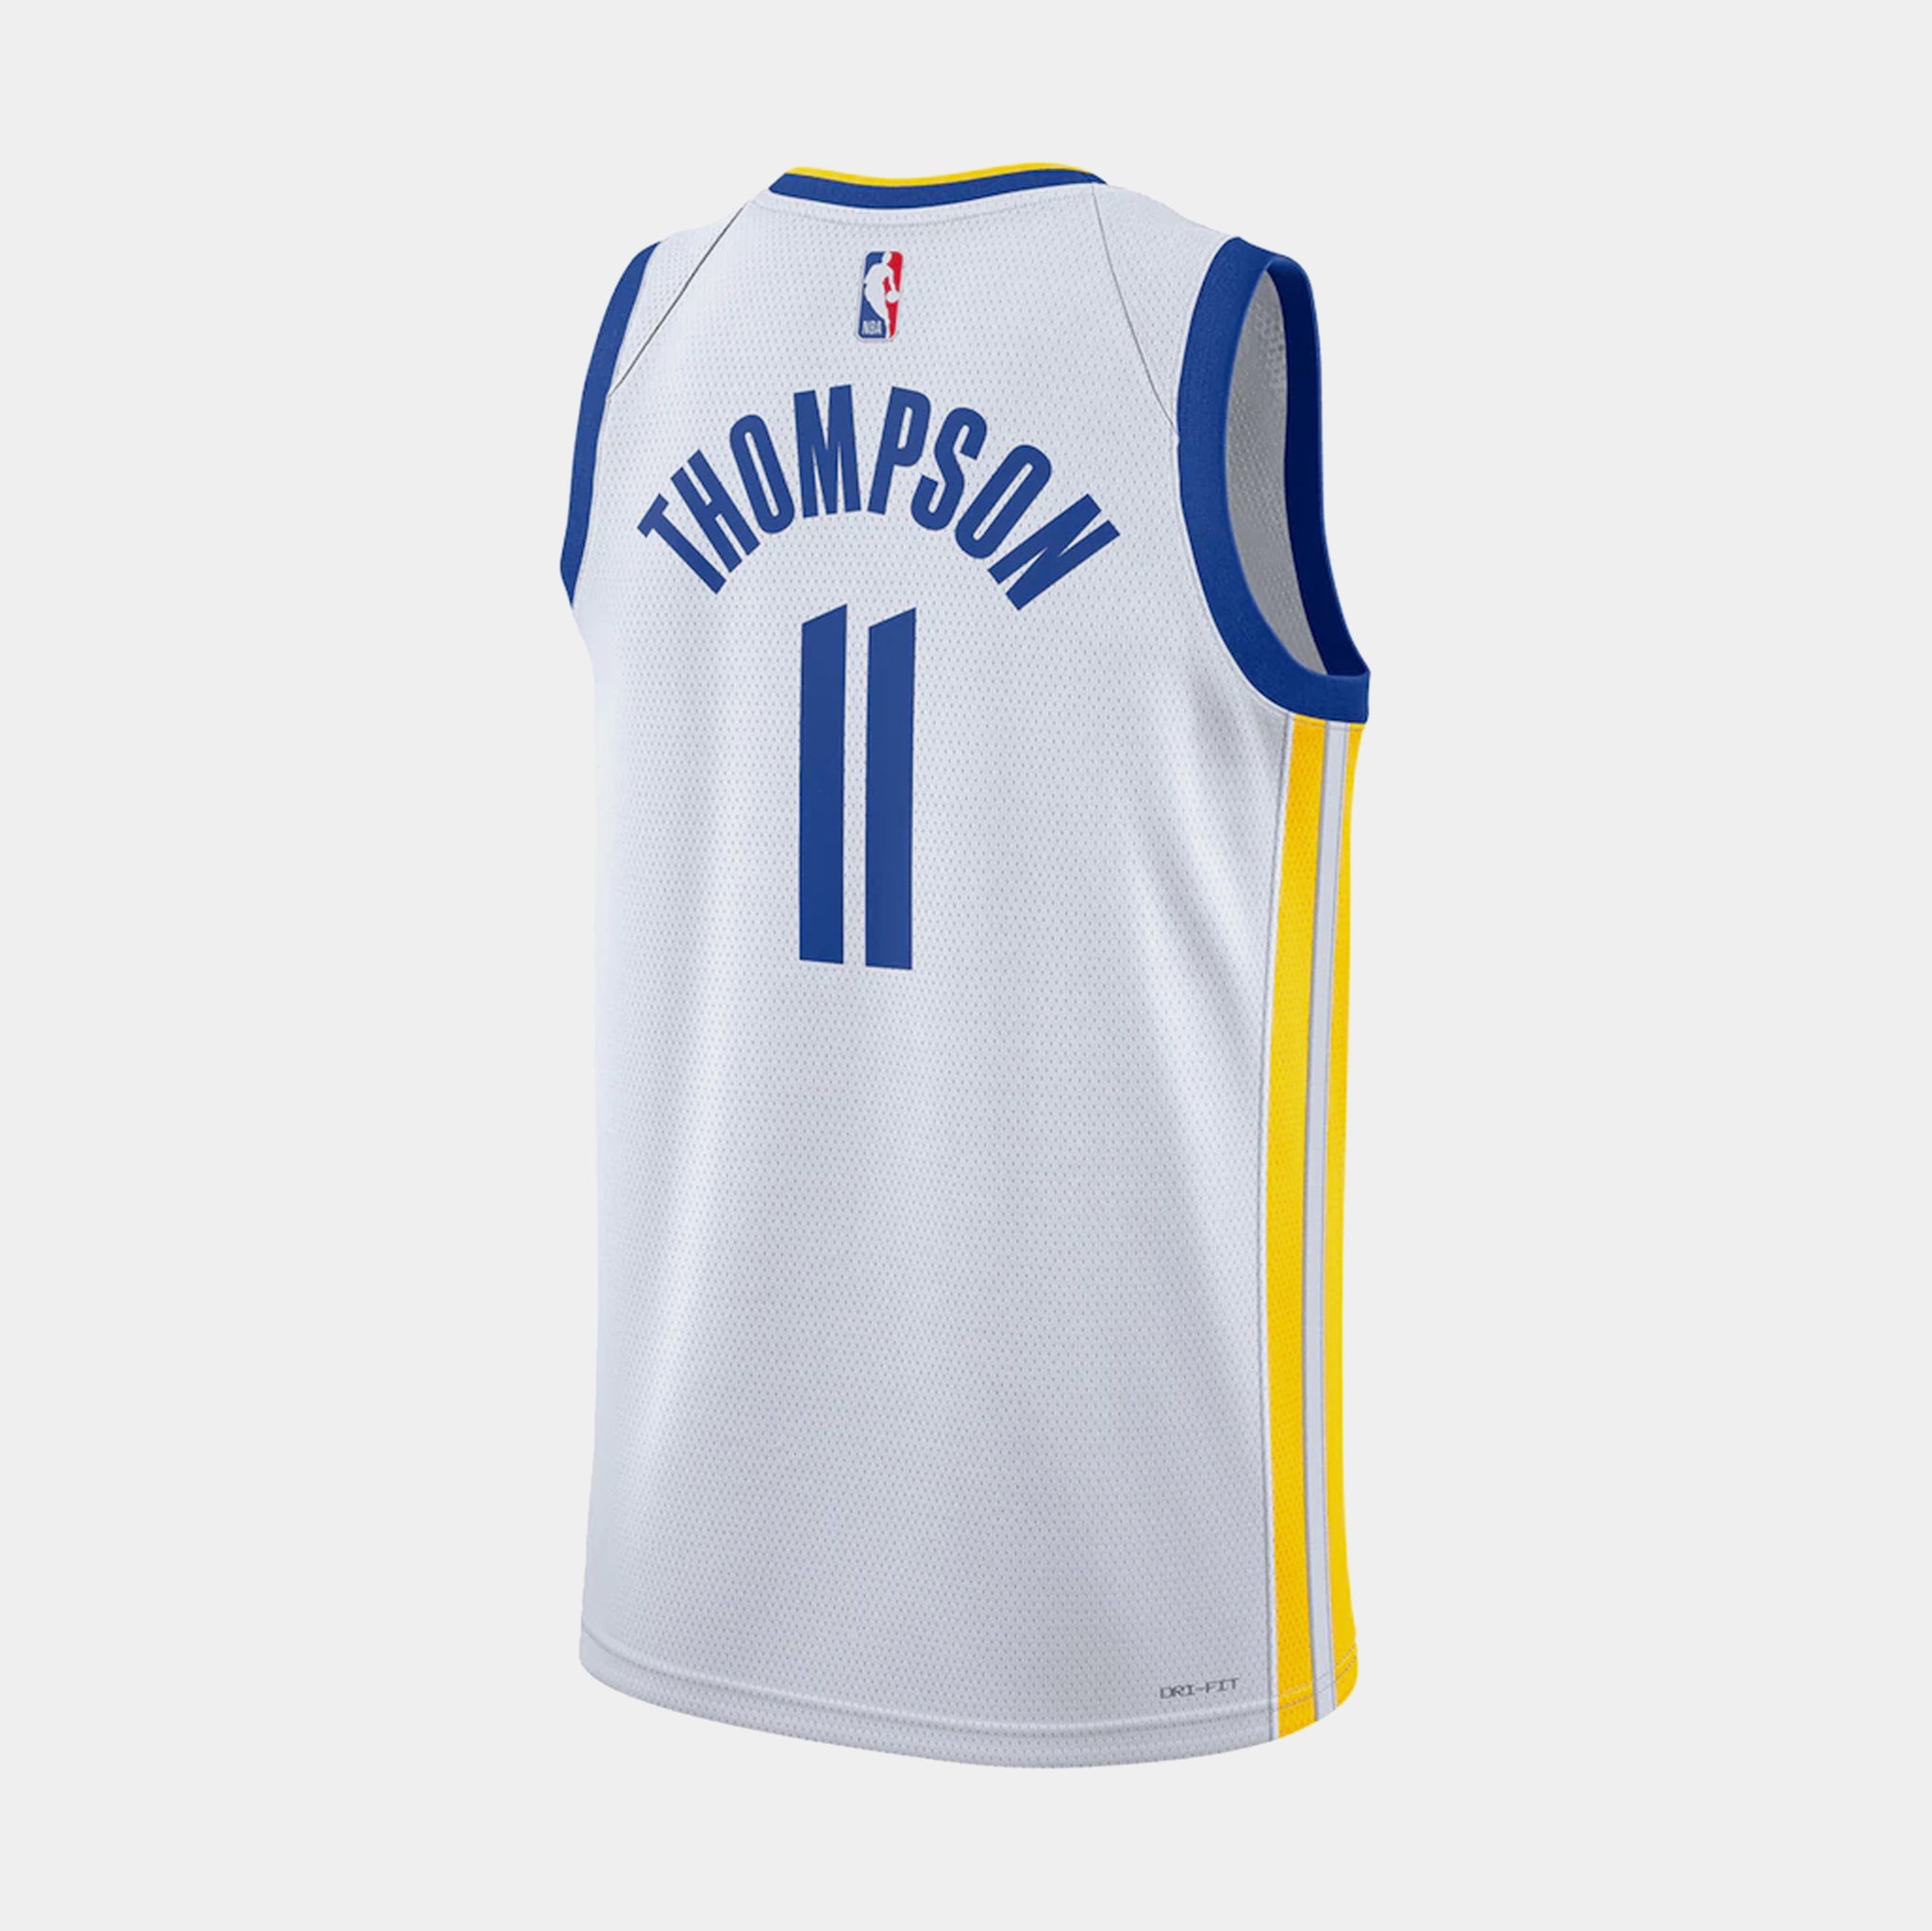 Mens NBA Apparel Golden State Warriors Blue Yellow Short Sleeve Tee T-Shirt